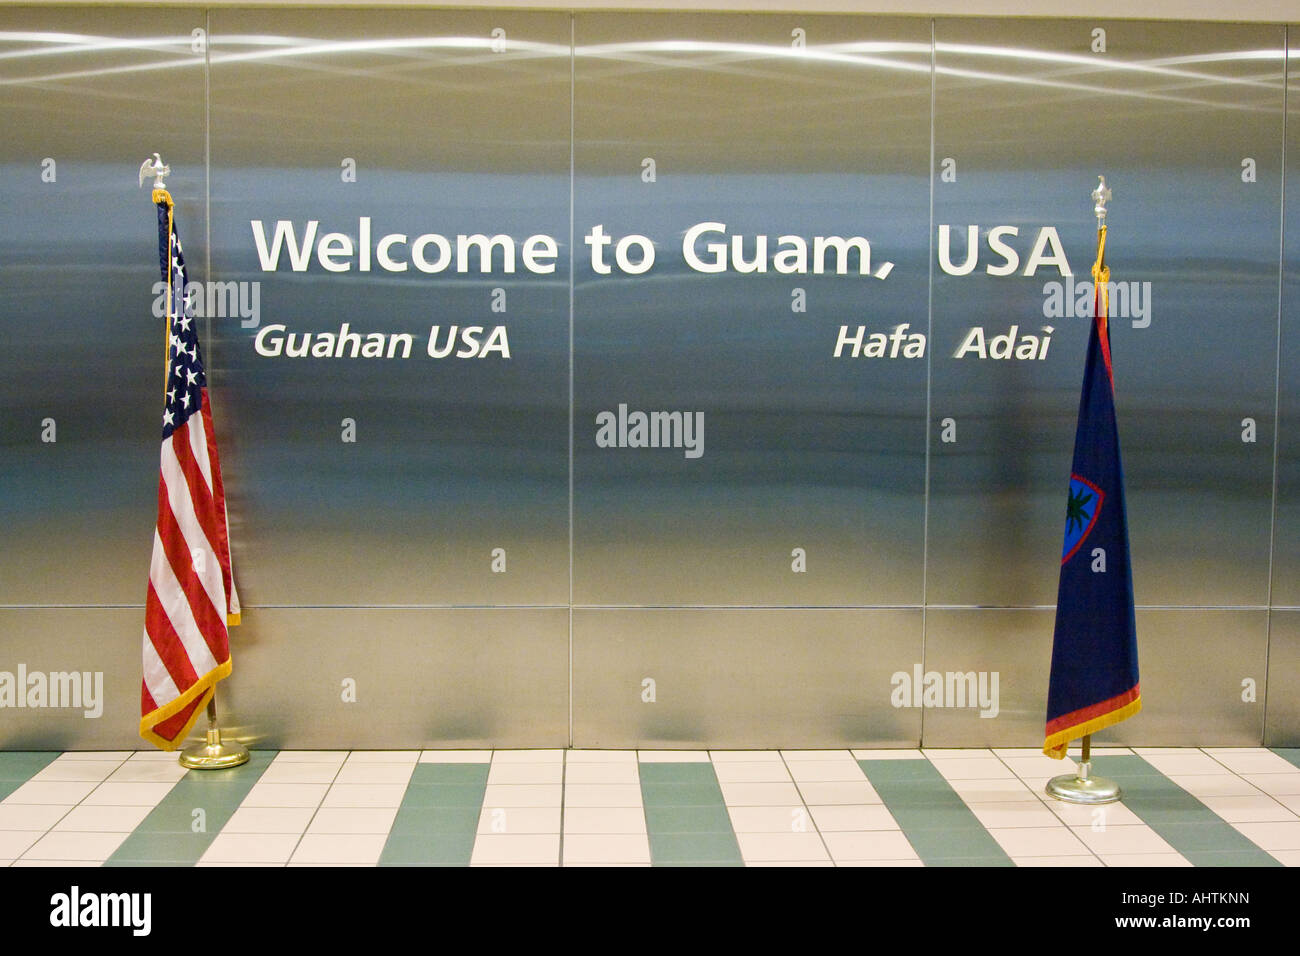 Panneau de bienvenue avec les USA et les drapeaux à Guam Guam Guam Airport Won Pat l'Immigration Banque D'Images